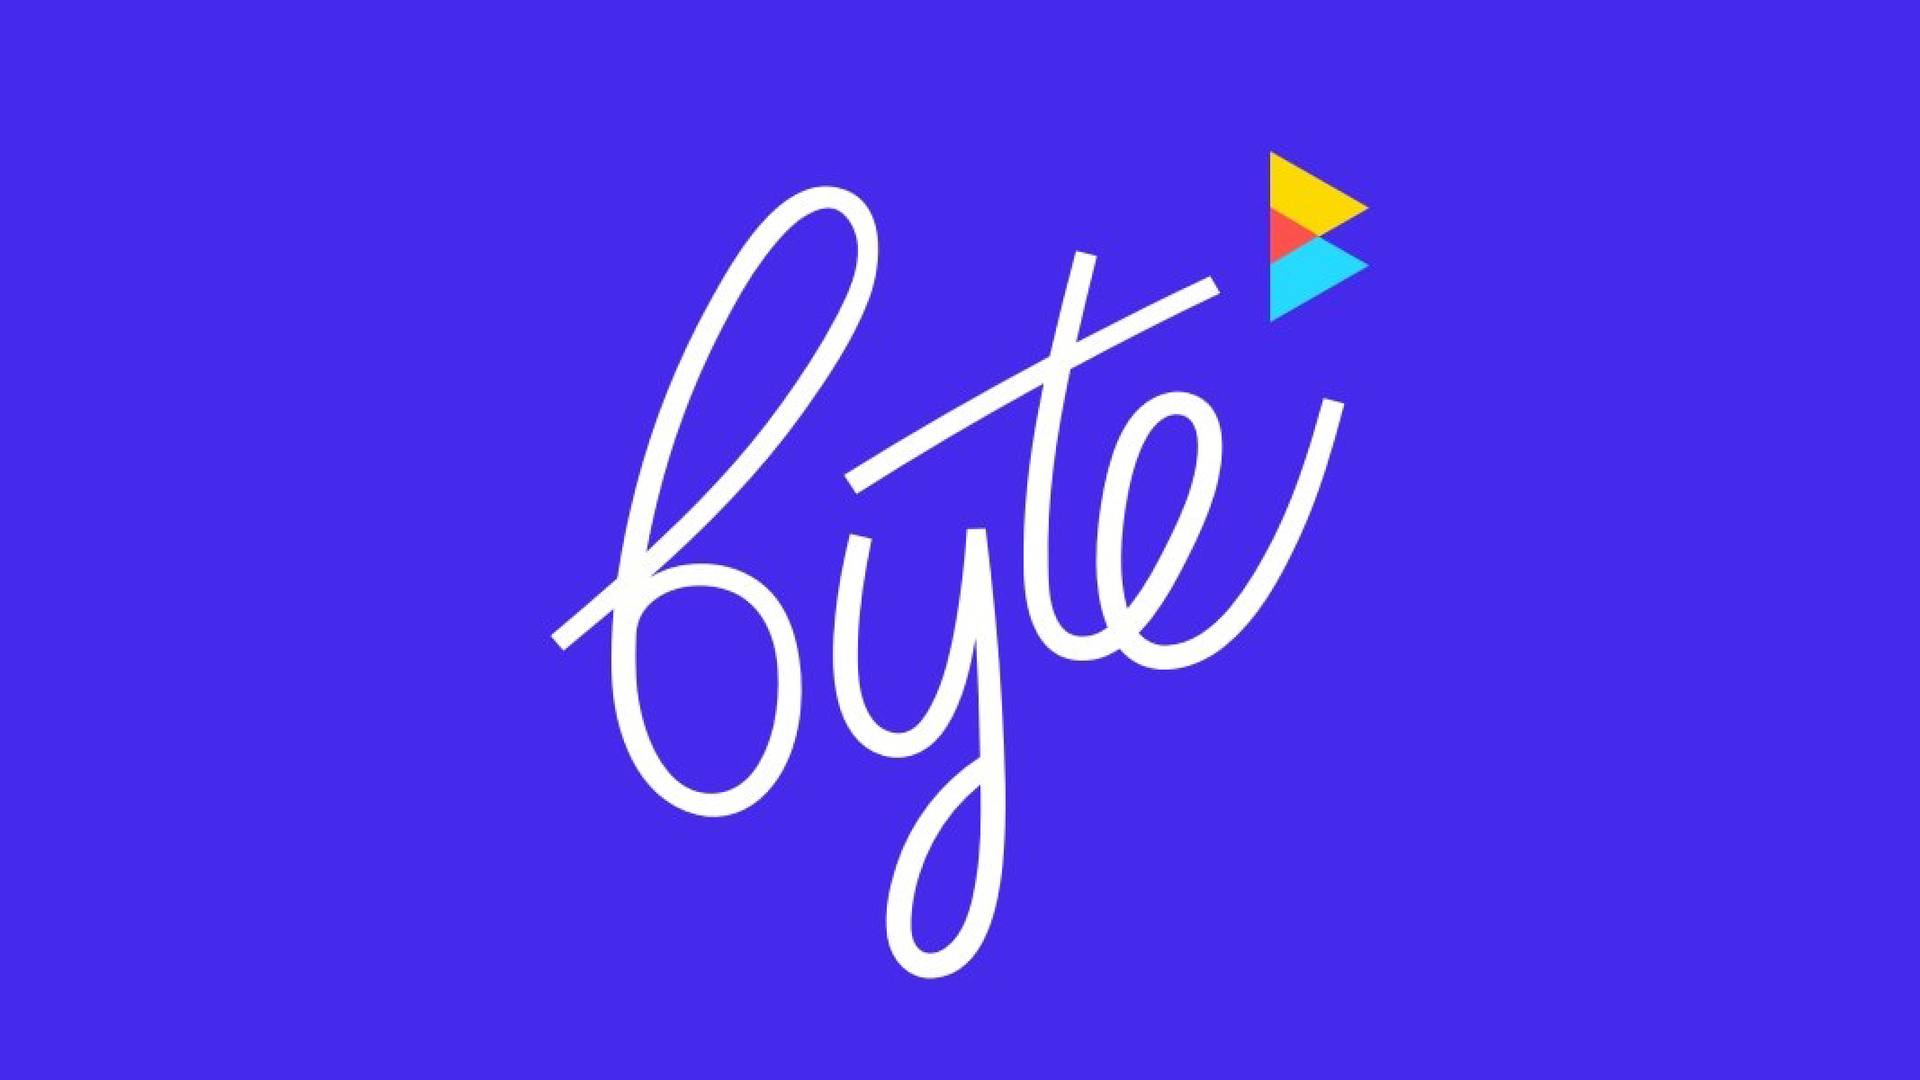 new app byte's logo. 